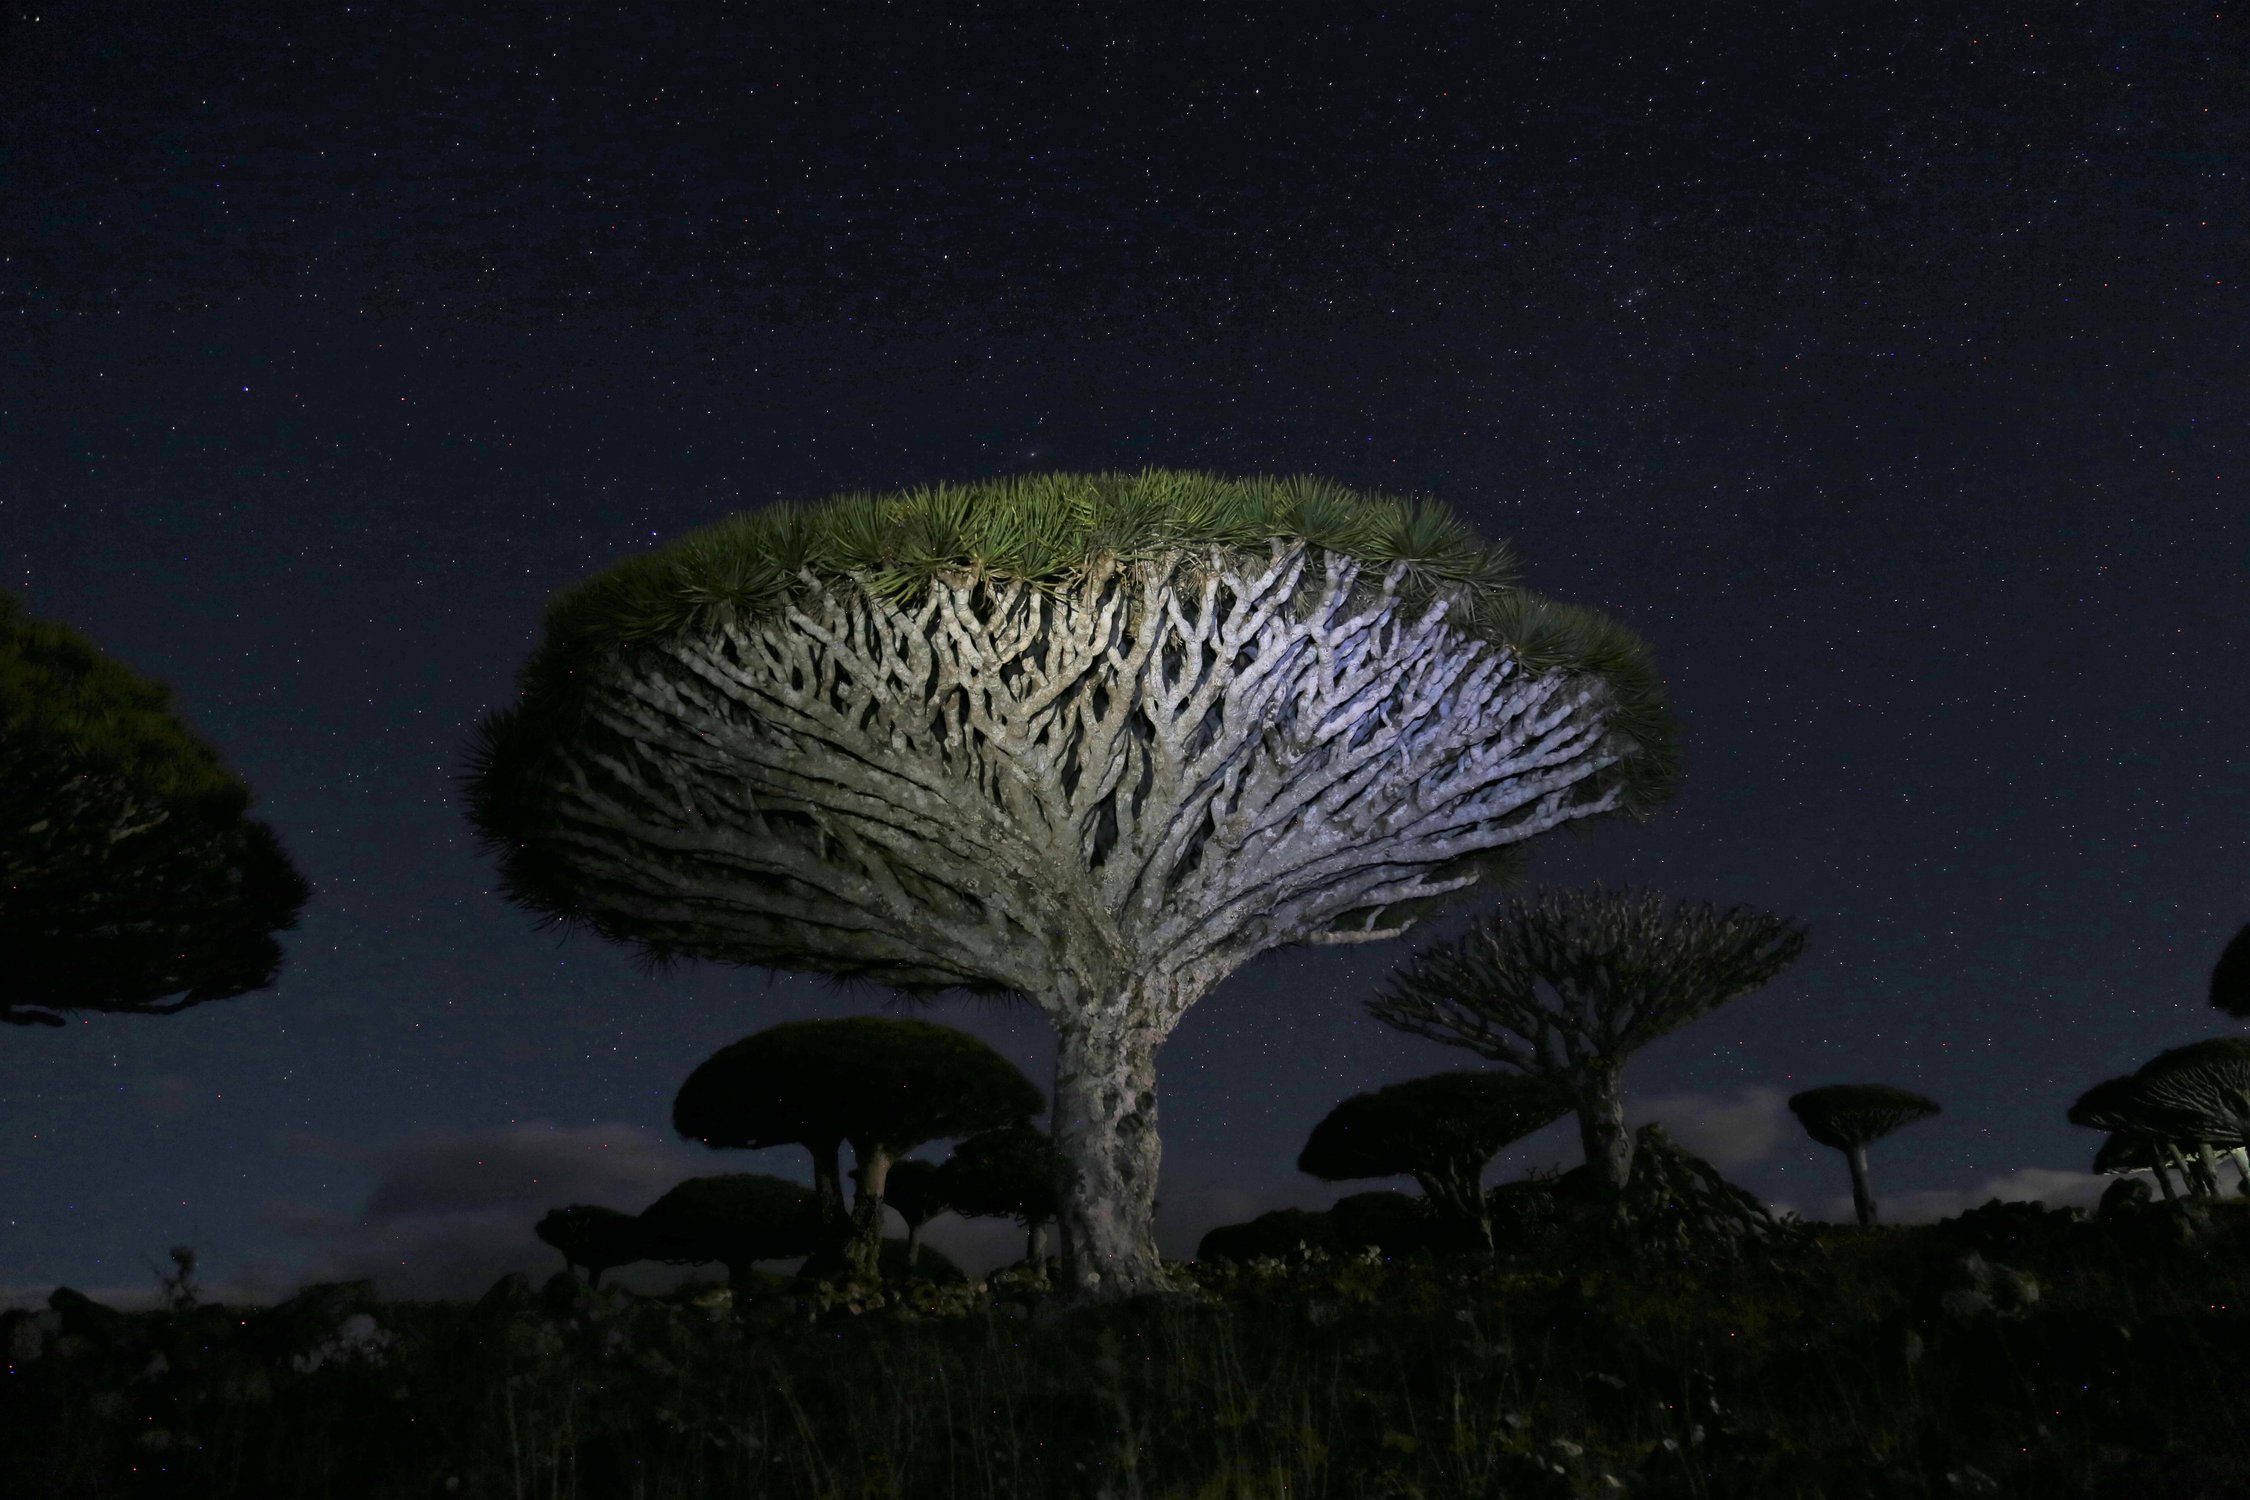 Таинственный эндемик острова Сокотра при свете звезд — Драконово дерево